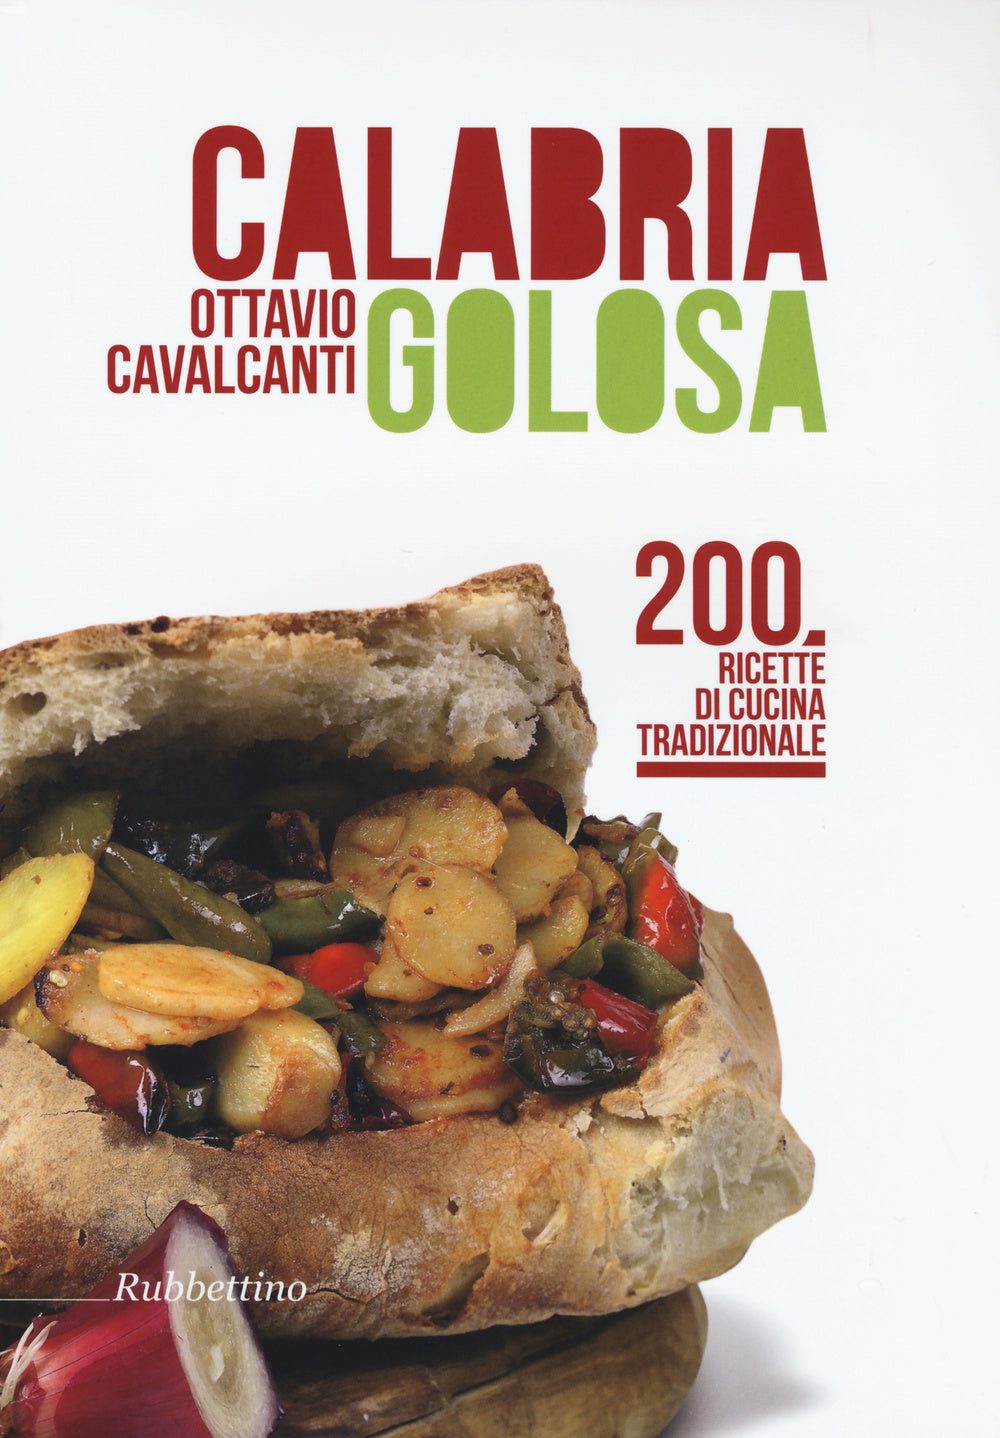 Calabria golosa. 200 ricette di cucina tradizionale.